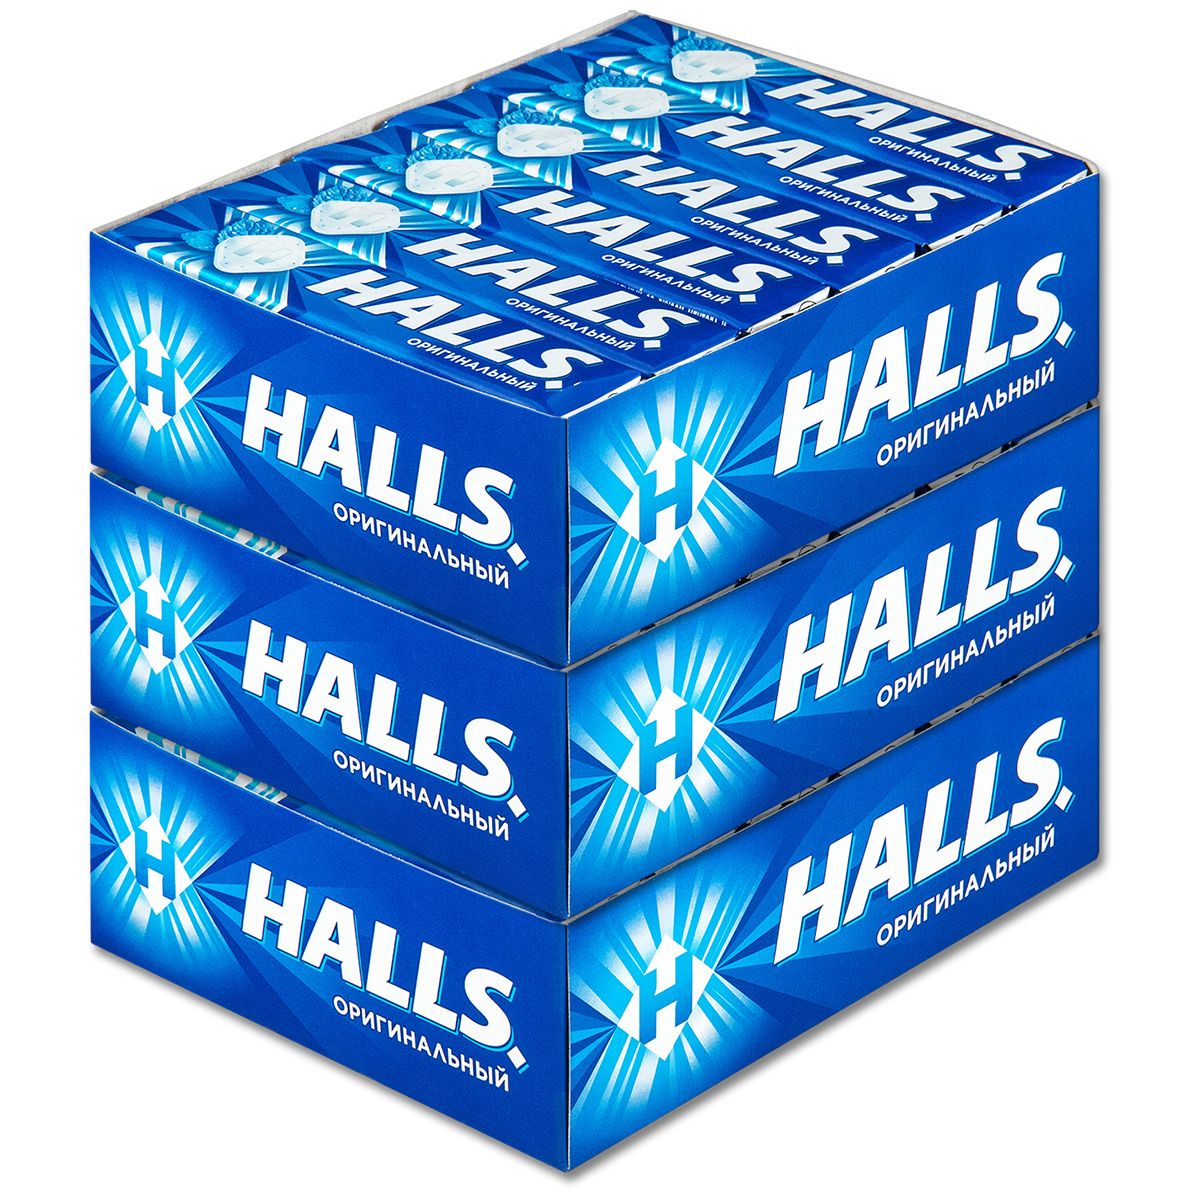 Halls леденцы. Halls оригинальный. Halls синий. Halls леденцы синие.